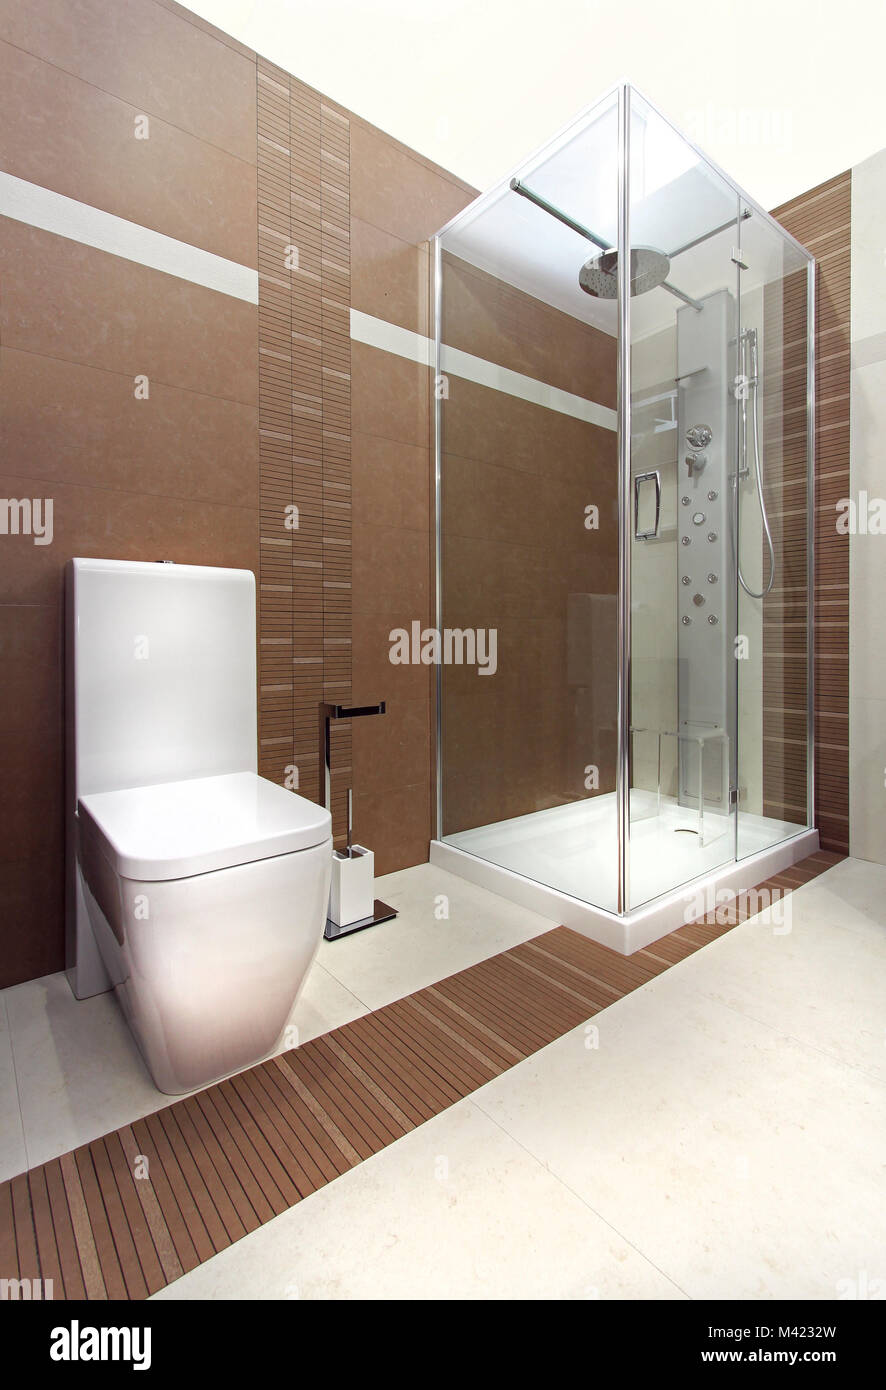 Baño moderno con piso de madera y baldosas color beige Fotografía de stock  - Alamy